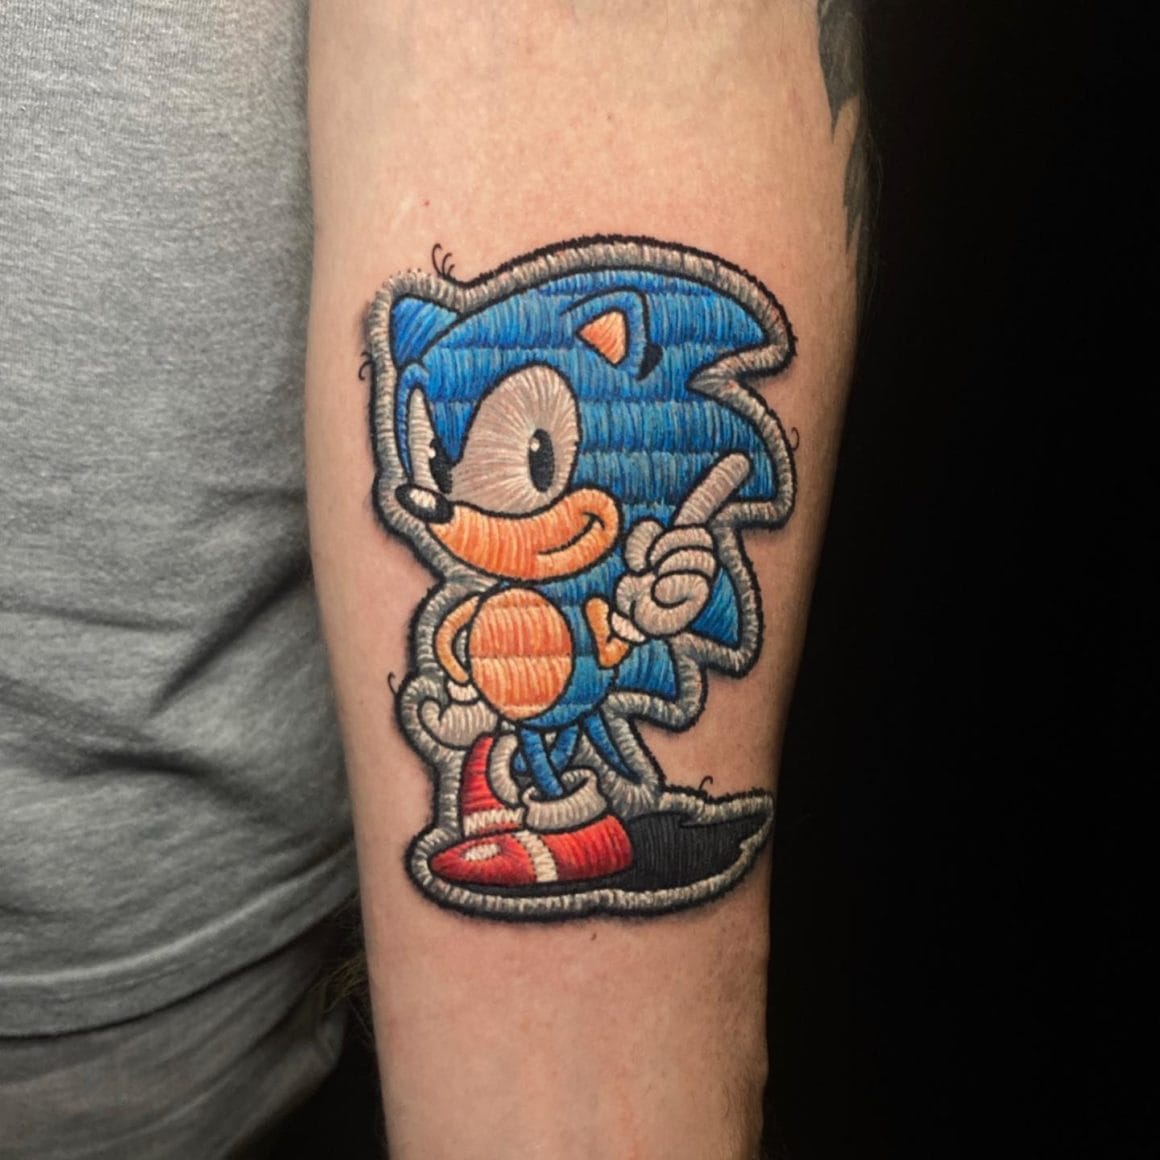 Ce patch représente un personnage bien connu en dessin animé, aussi adapté en jeux vidéos, il s'agit de Sonic.